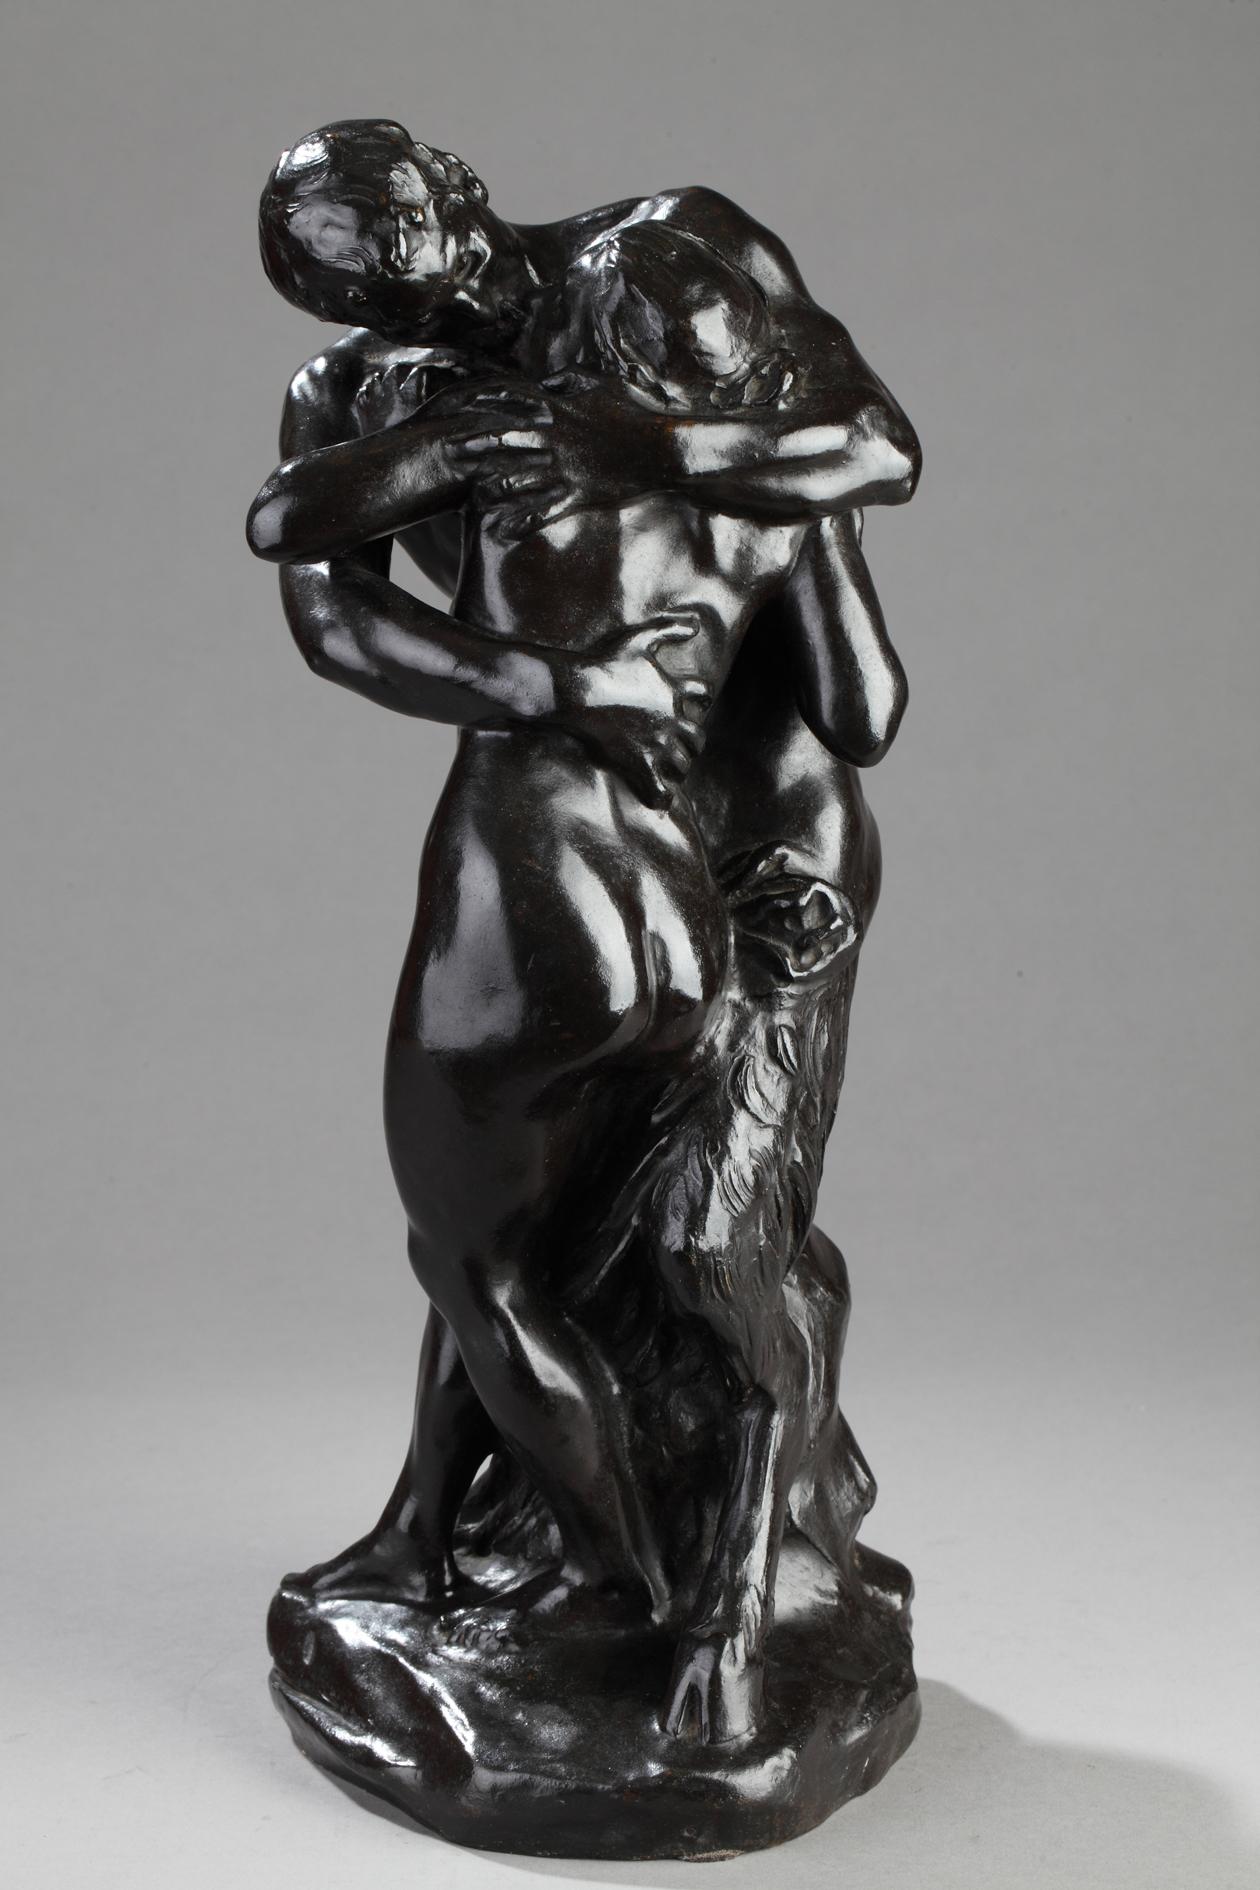 The Kiss - Sculpture by Aimé-Jules Dalou